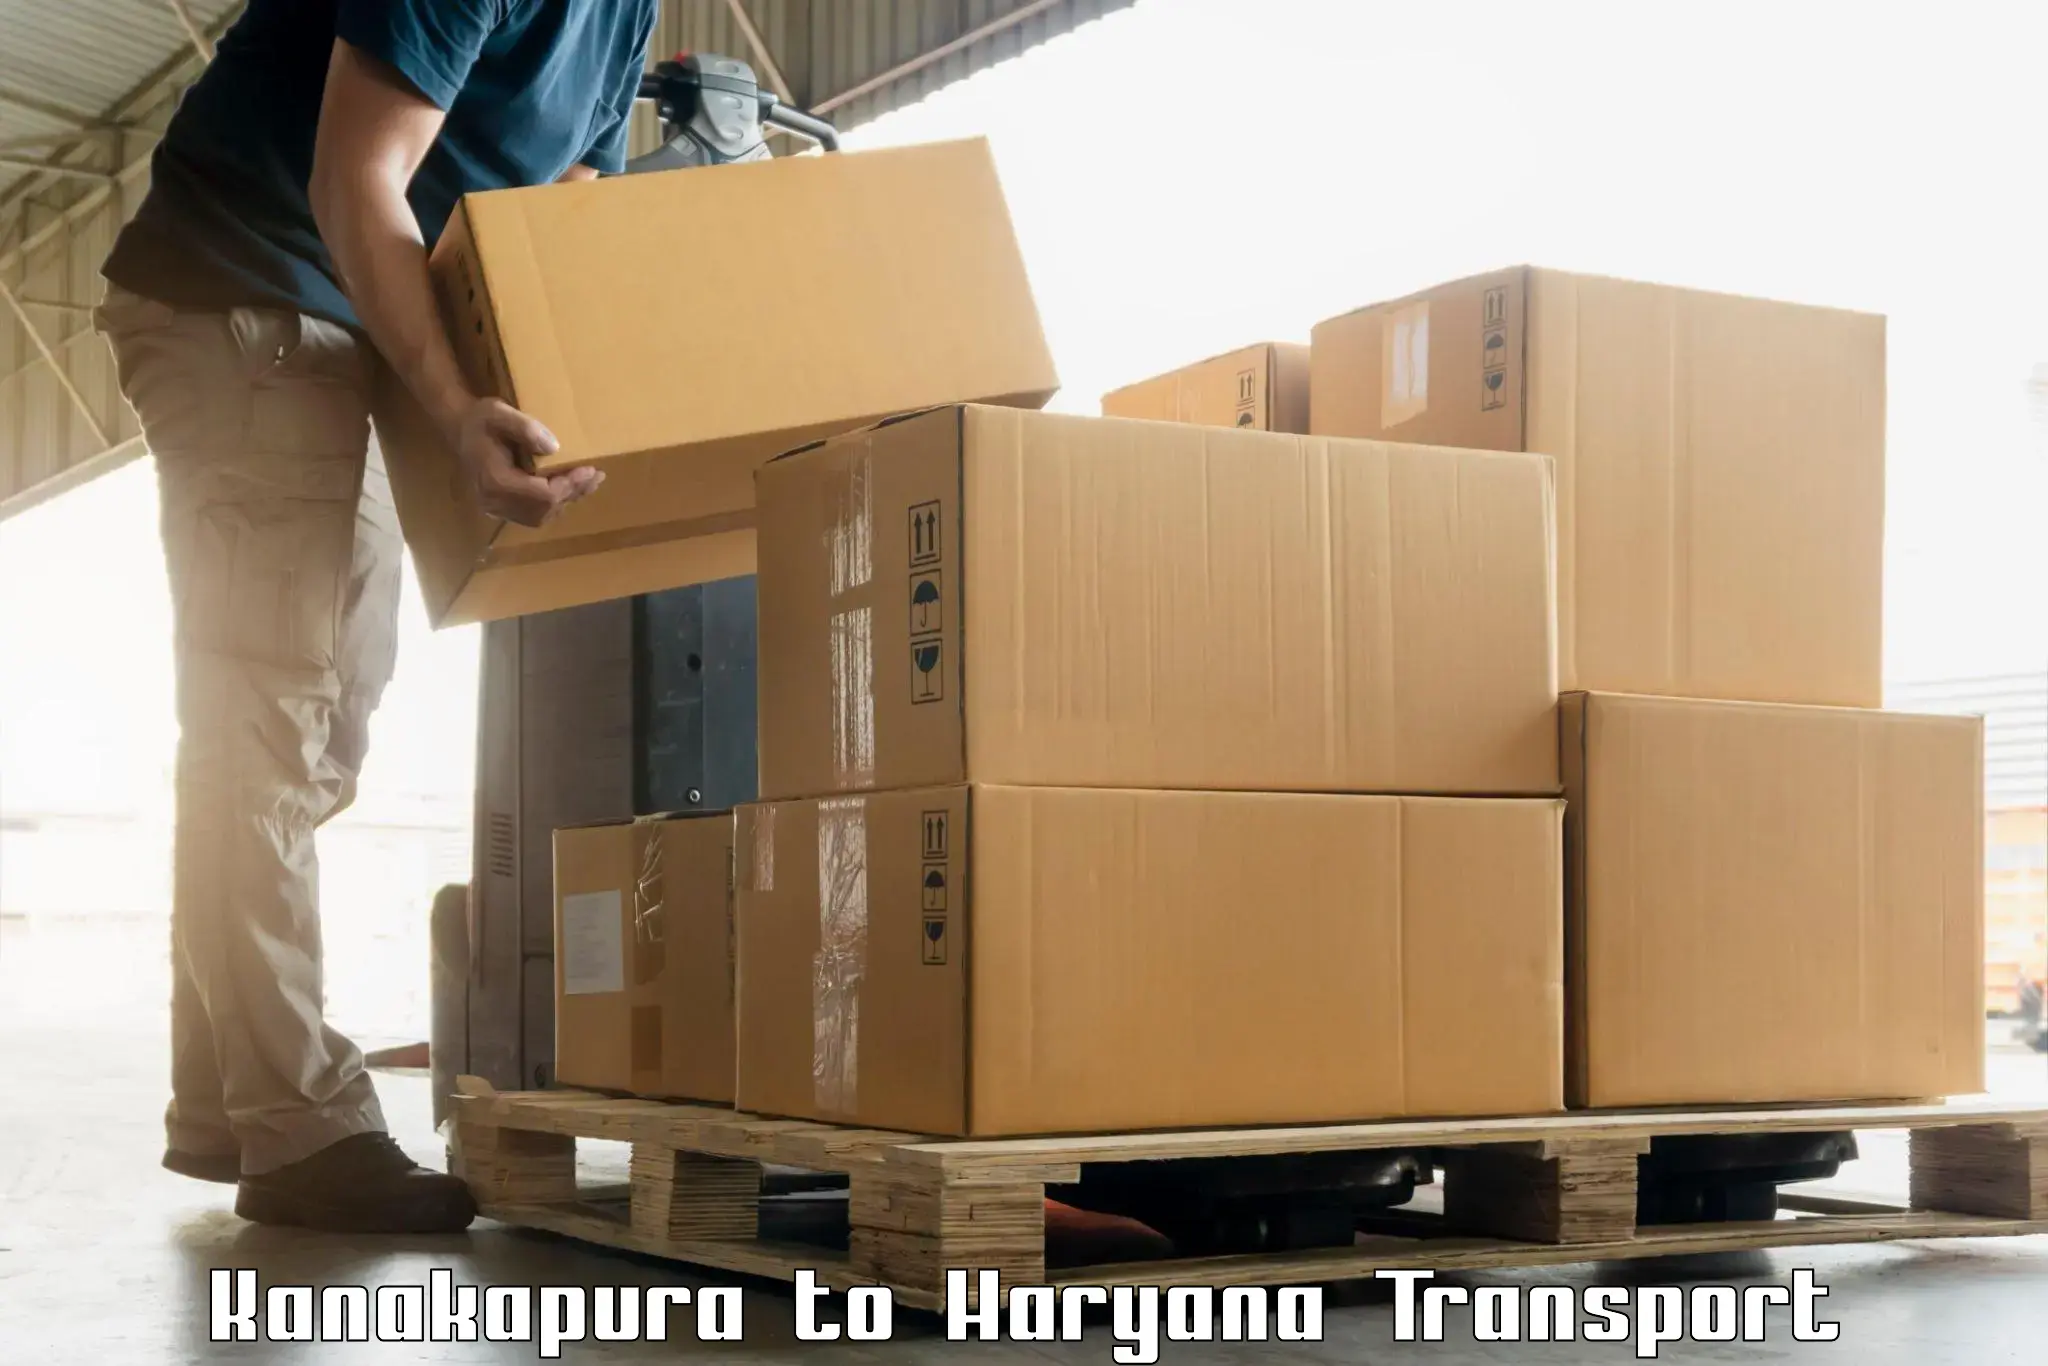 Shipping partner Kanakapura to Hisar